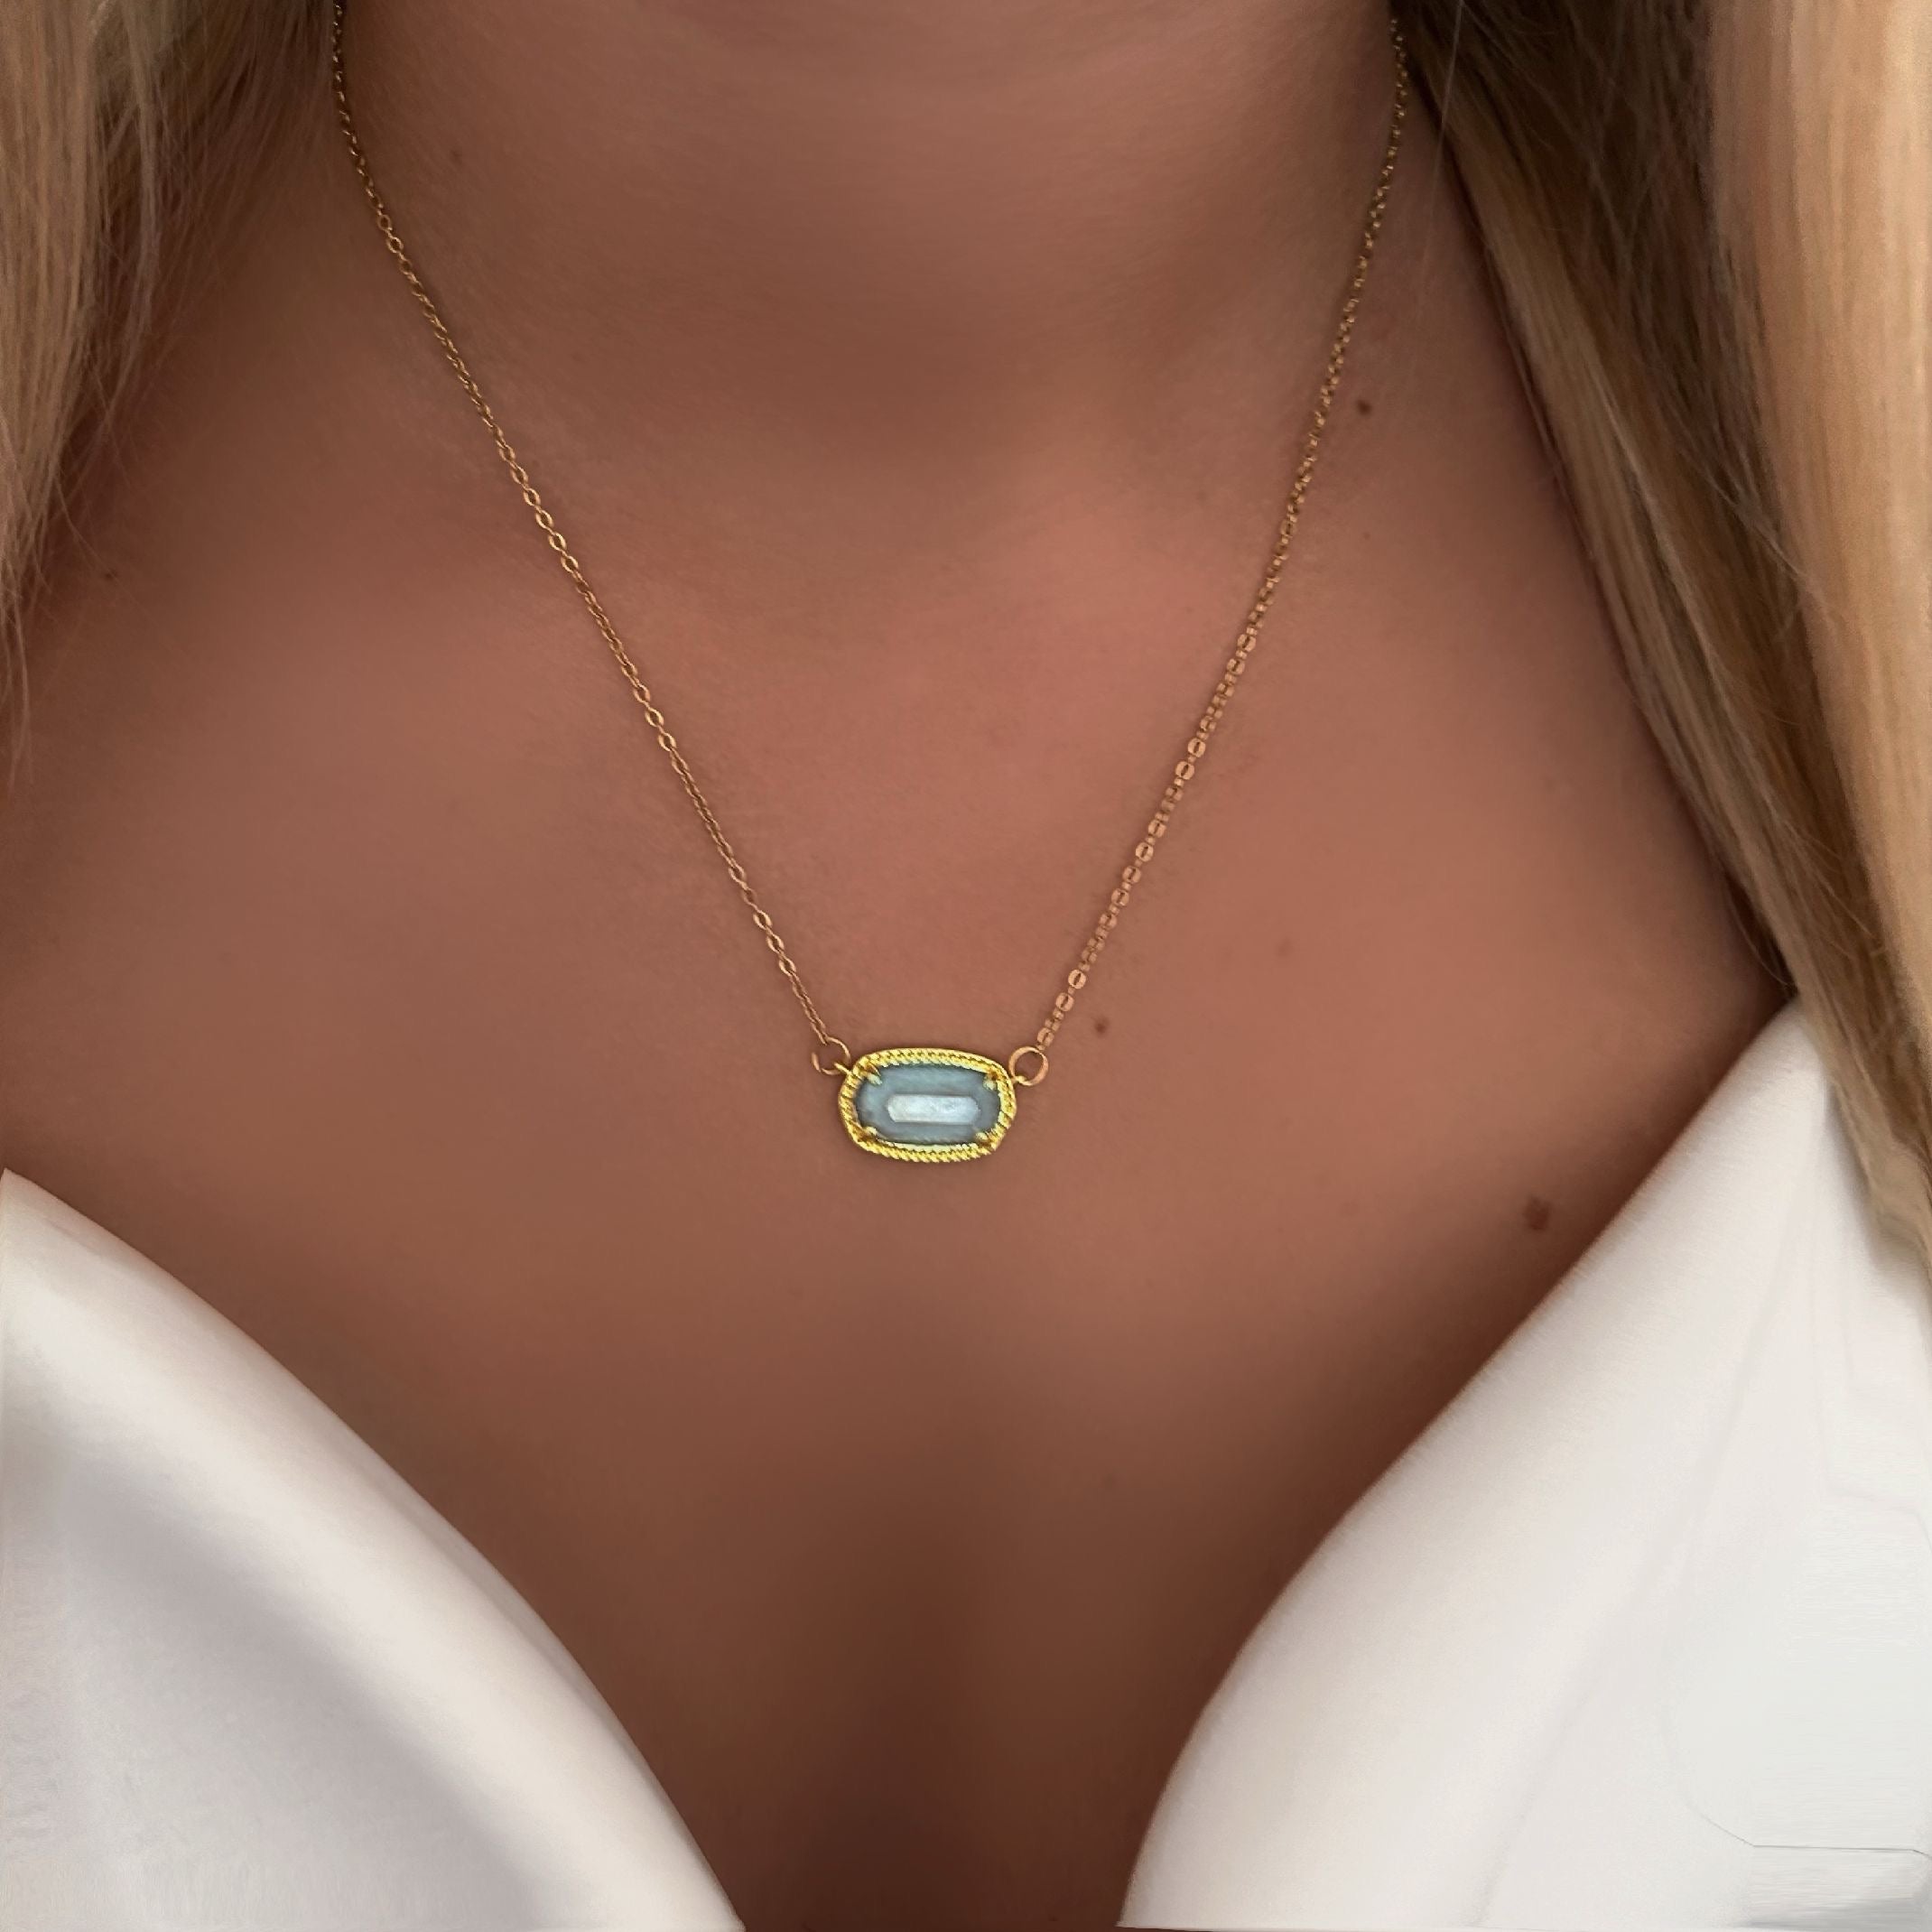 Aquamarine necklace 